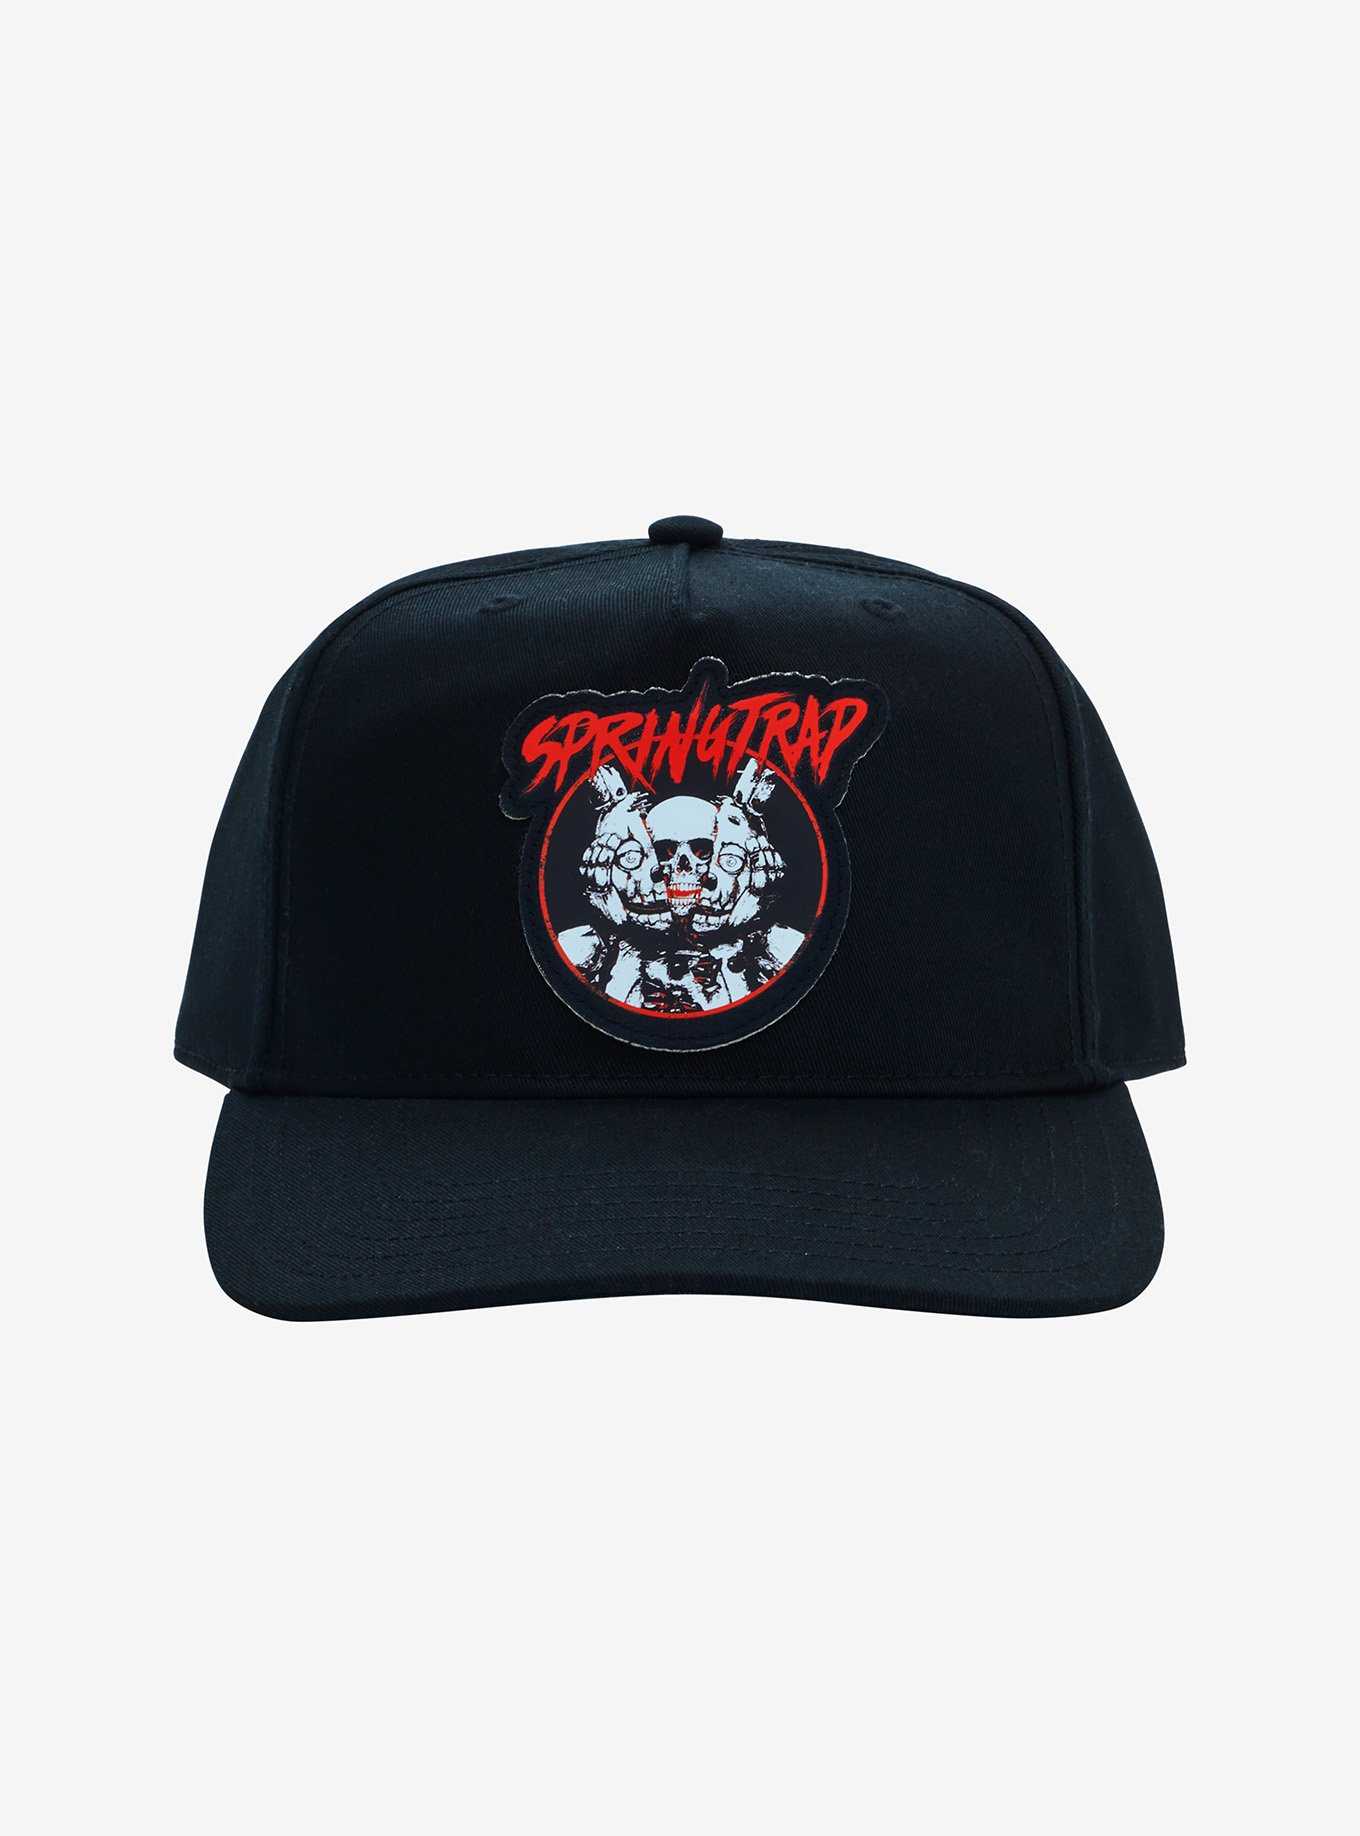 Snapback Trucker Hat for Men - Mesh Baseball Cap - Bear/Cyborg